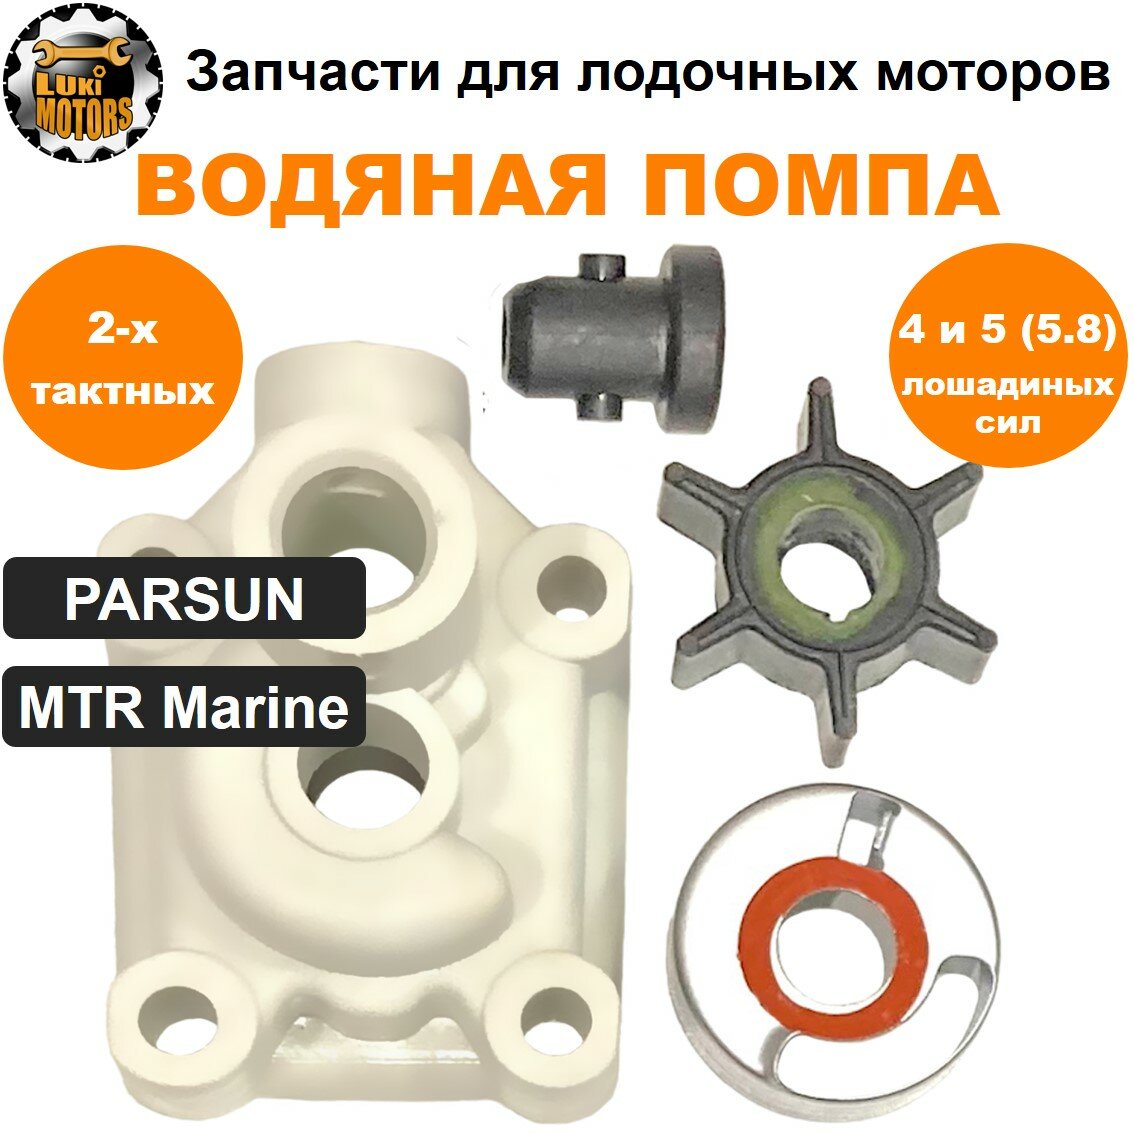 Ремкомплект водяной помпы моторов PARSUN, MTR Marine T4, T5, T5.8